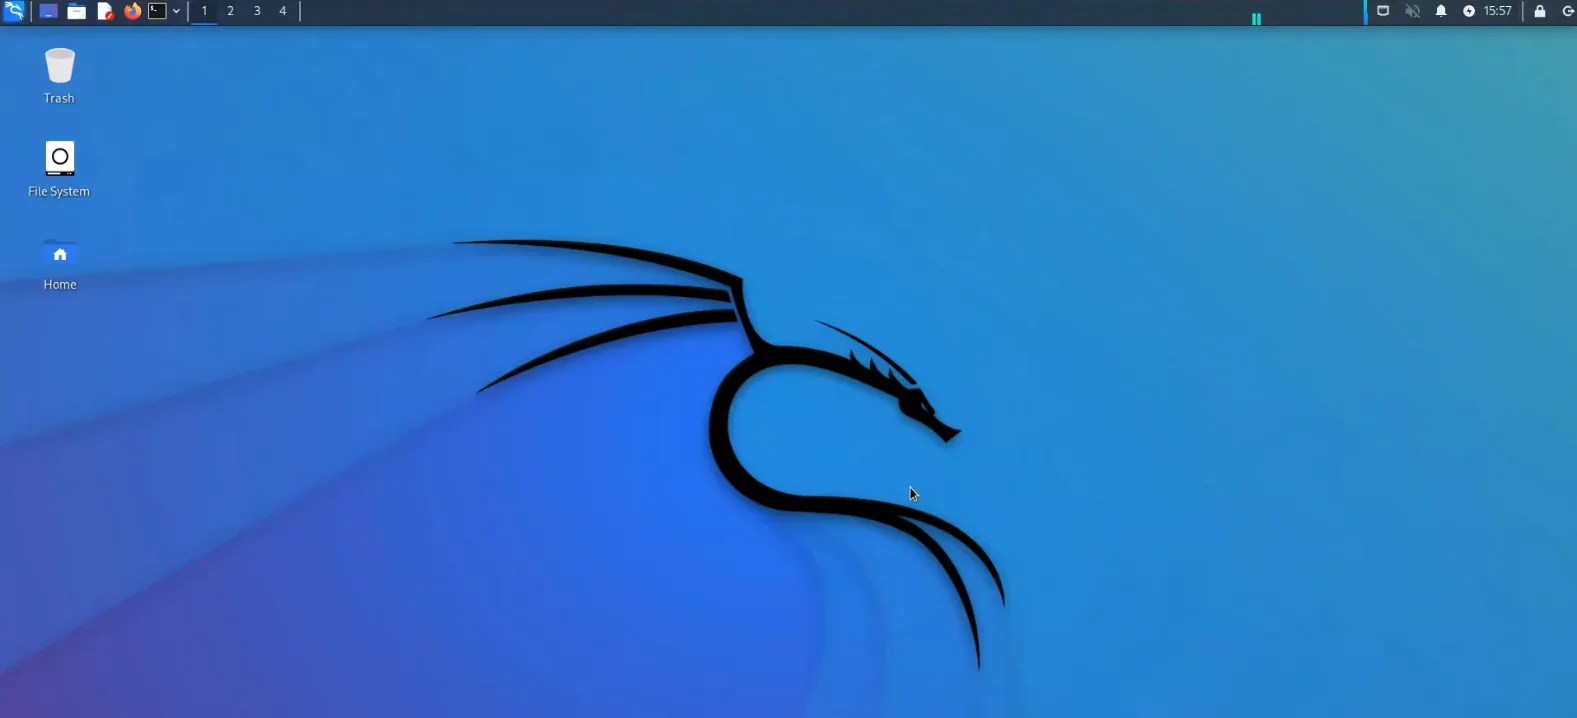 Cài Kali Linux Trên Vmware Thành Công